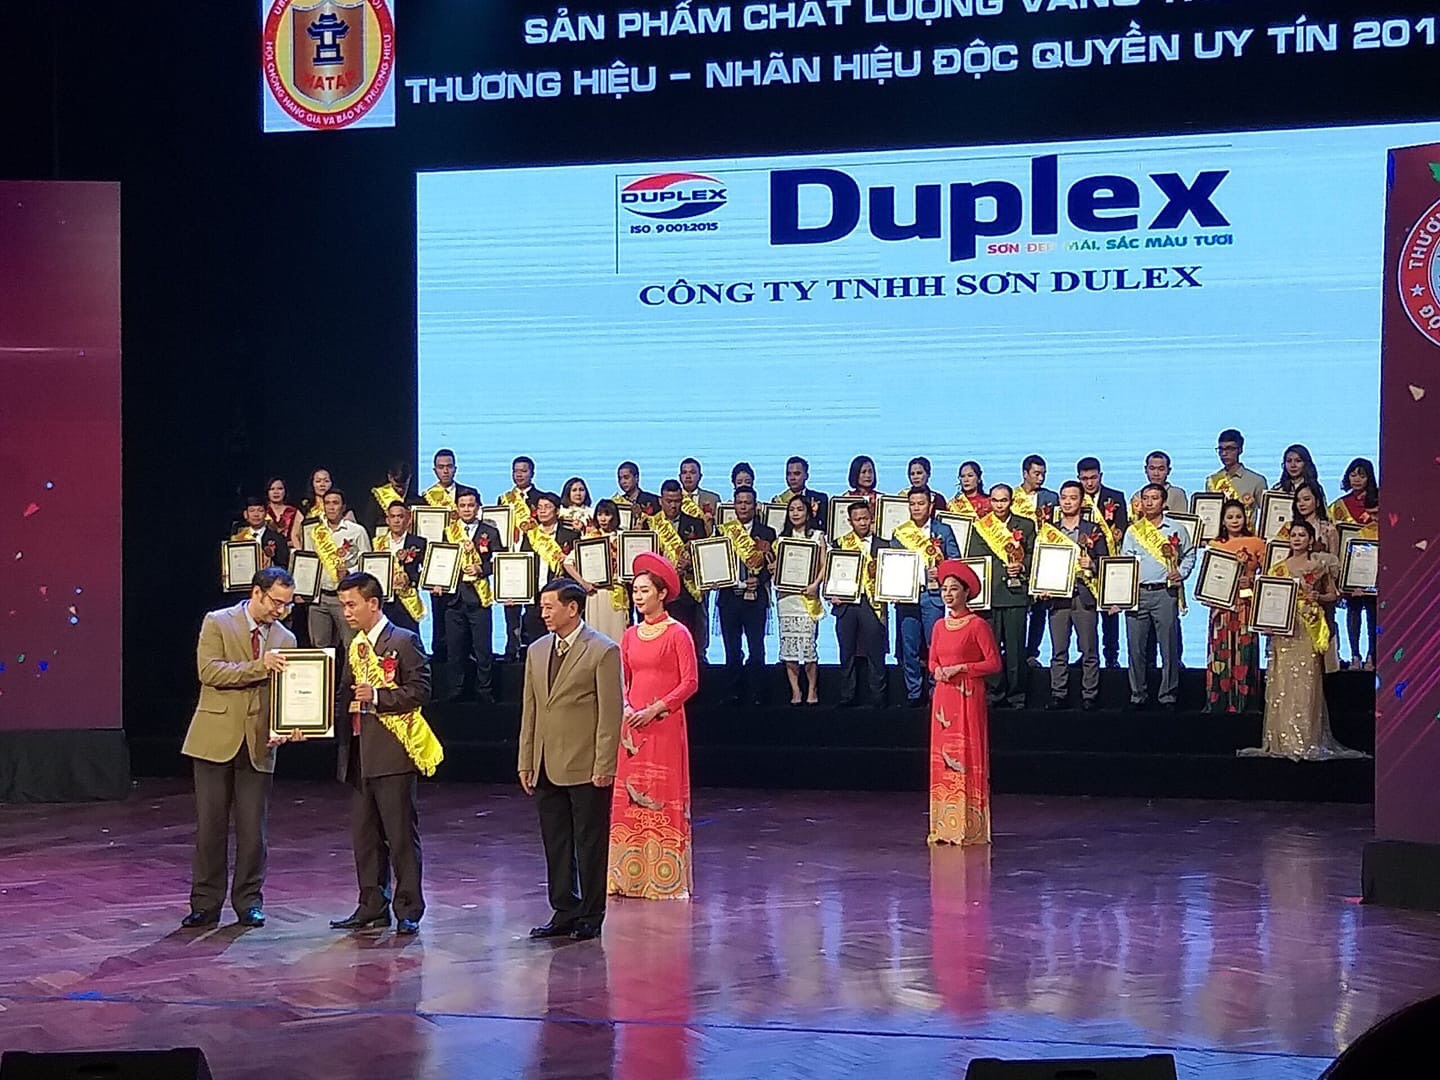 Sơn Duplex vinh dự nhận giải thưởng Top 100 thương hiệu - nhãn hiệu uy tín năm 2019